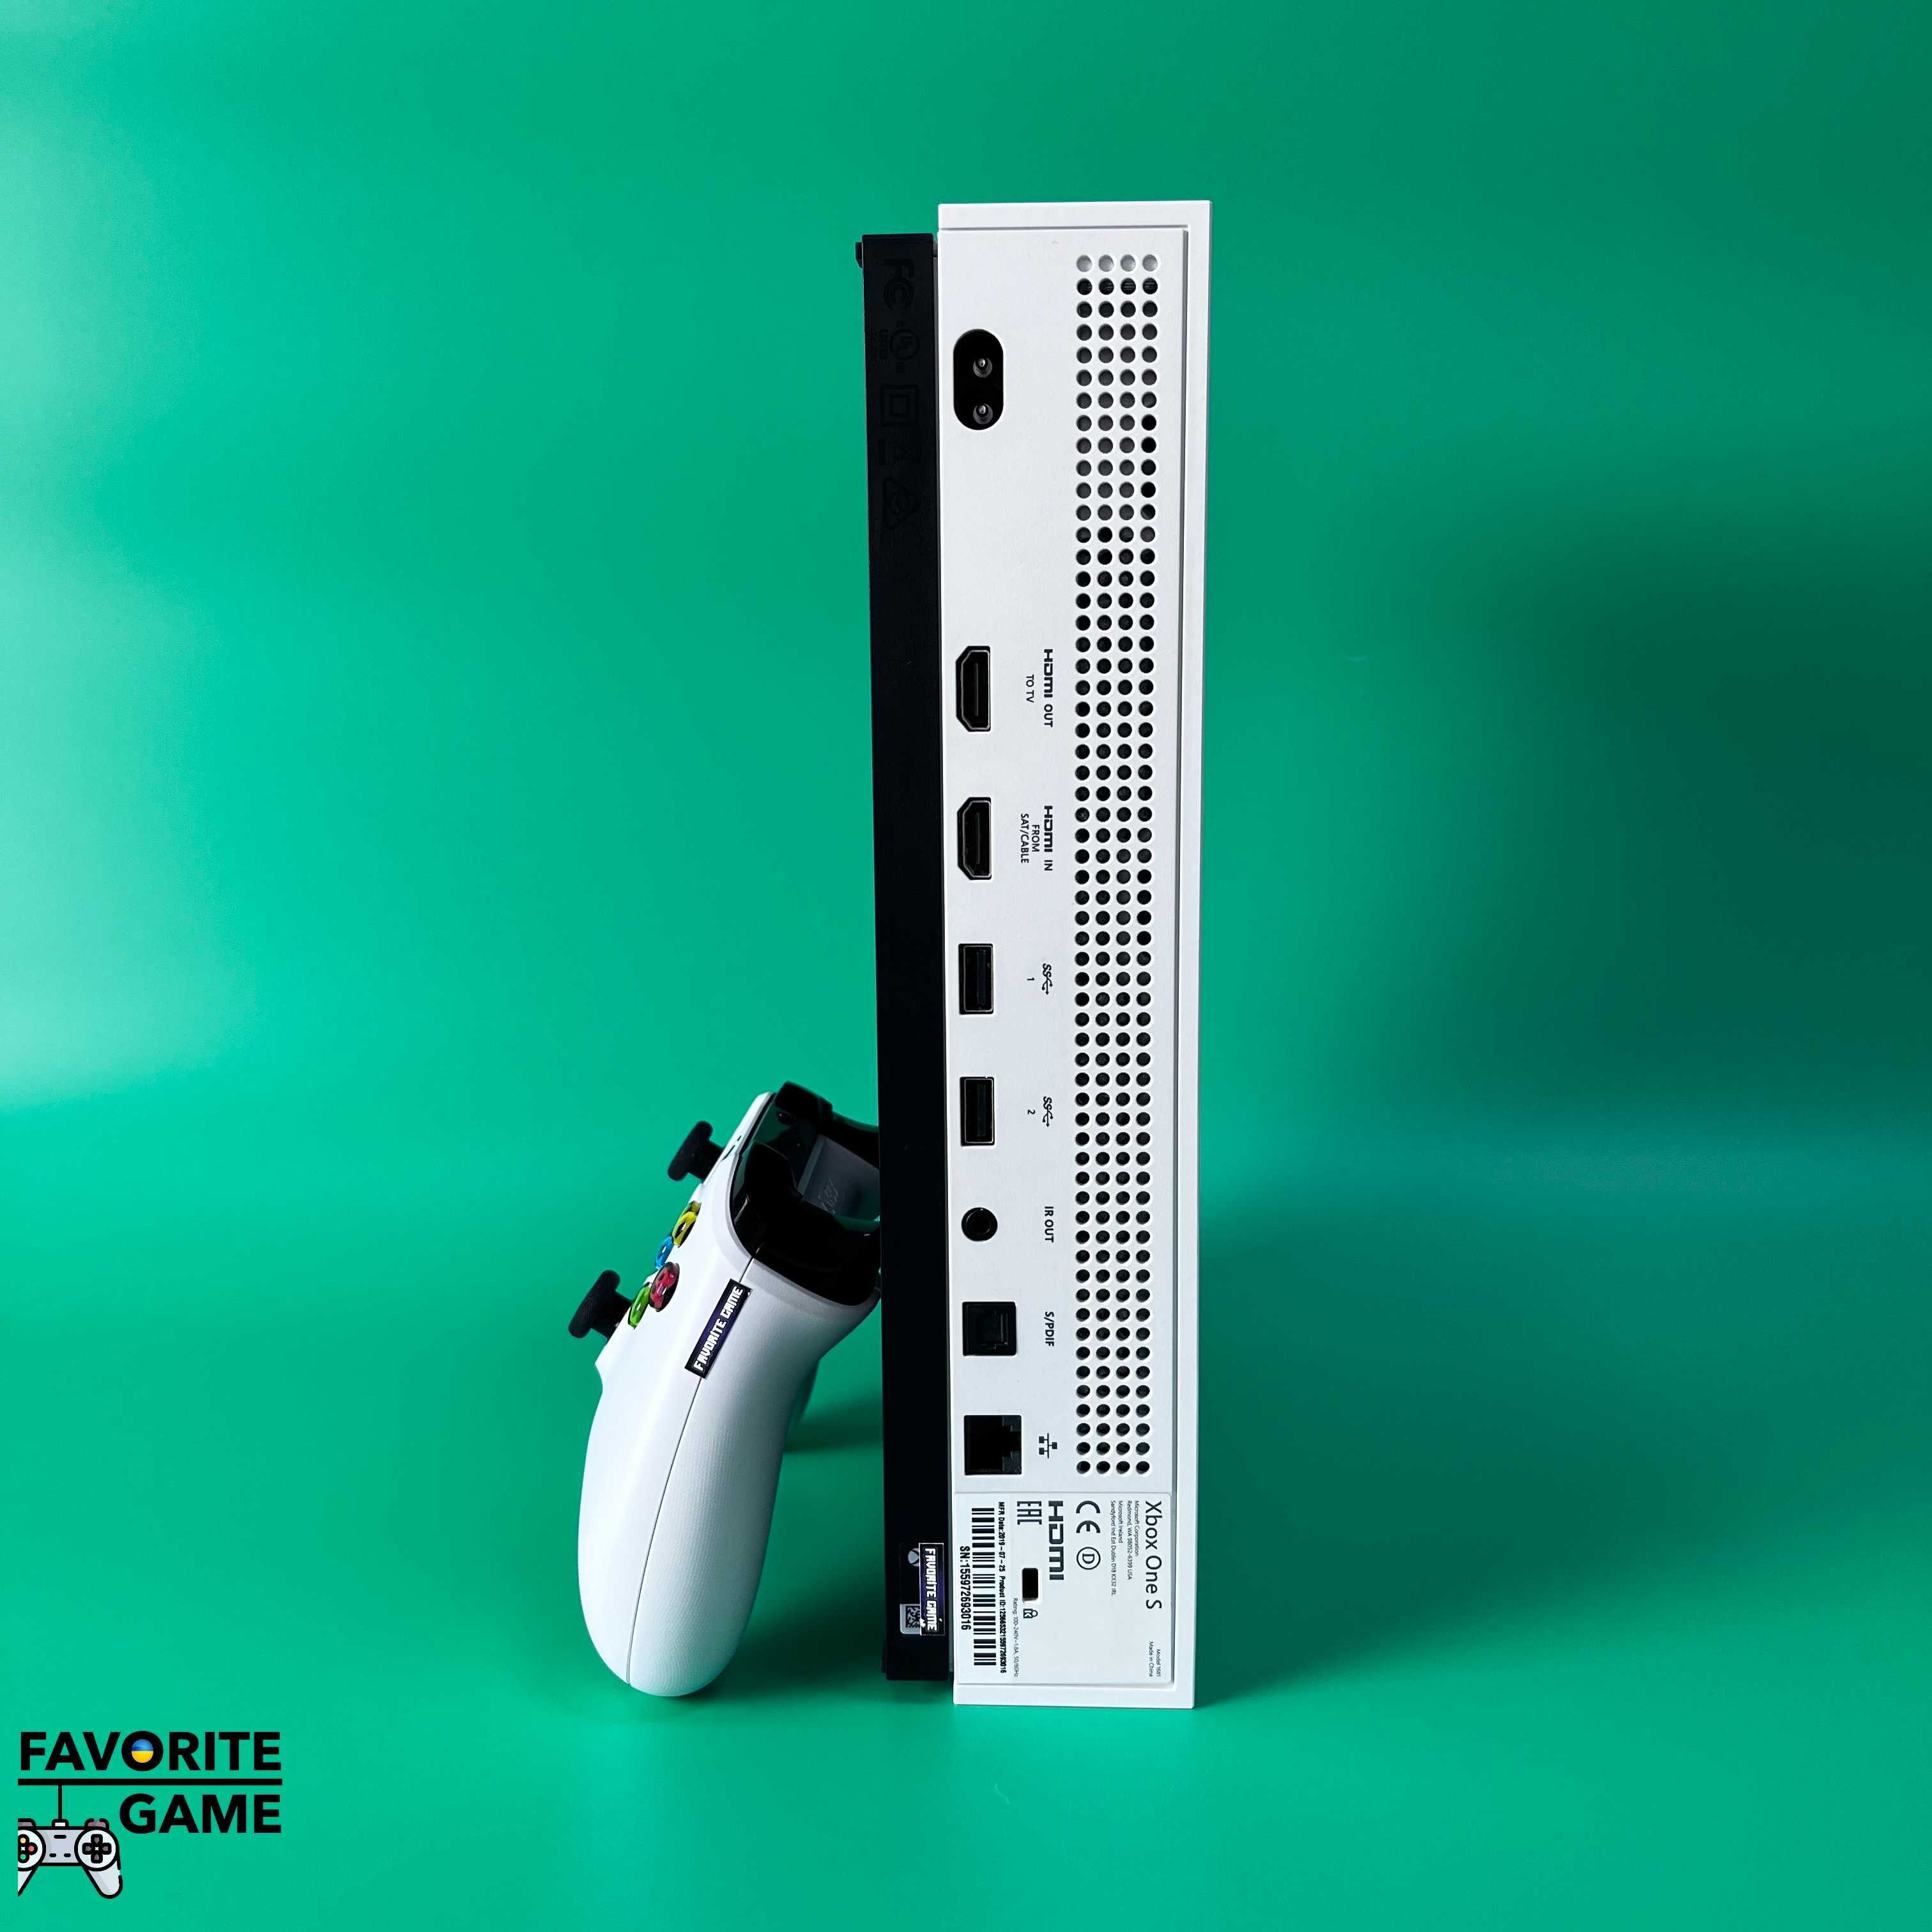 Xbox One S 500GB + 450 ігор + Гарантія / Доставка Київ / Іксбокс Ван С